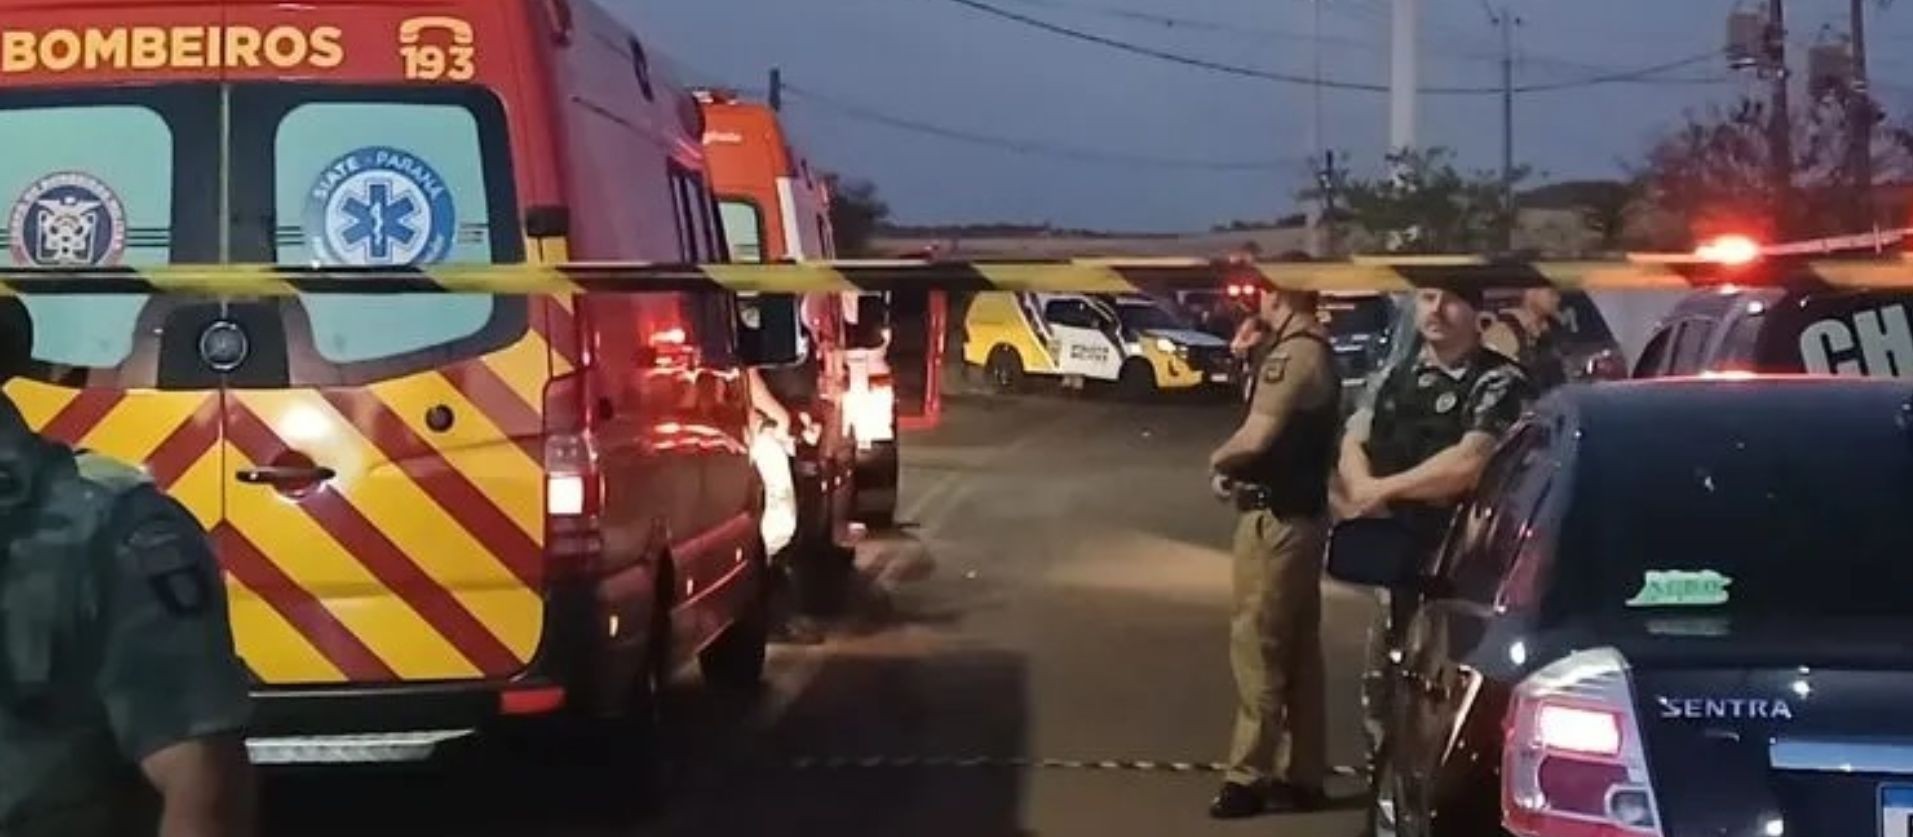 Quatro crianças morrem atropeladas por Kombi em distrito de Londrina